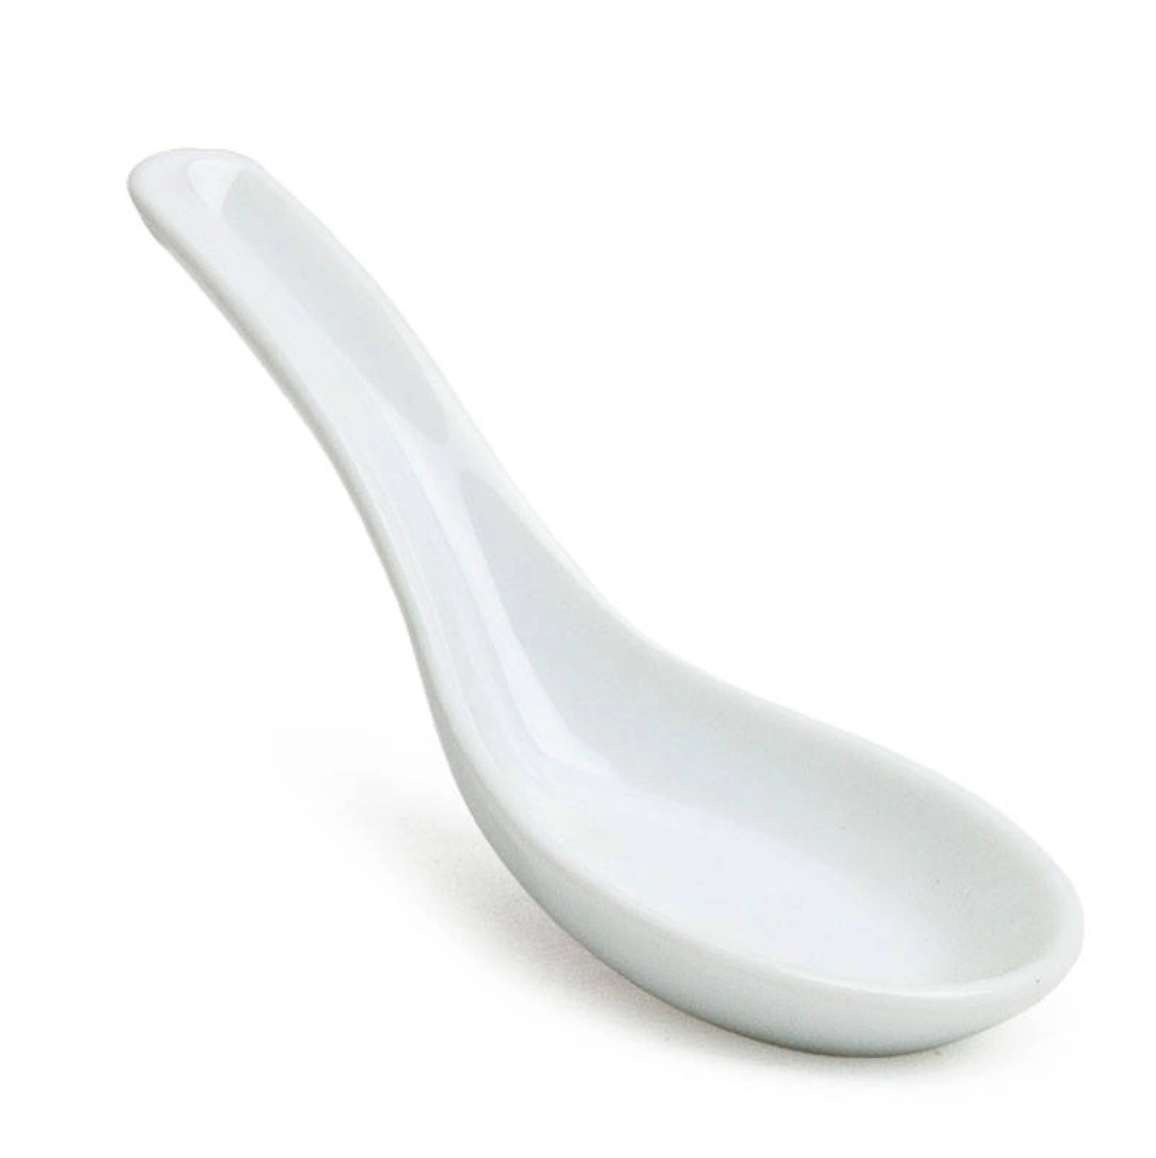 Porcelain Soup Spoon, White